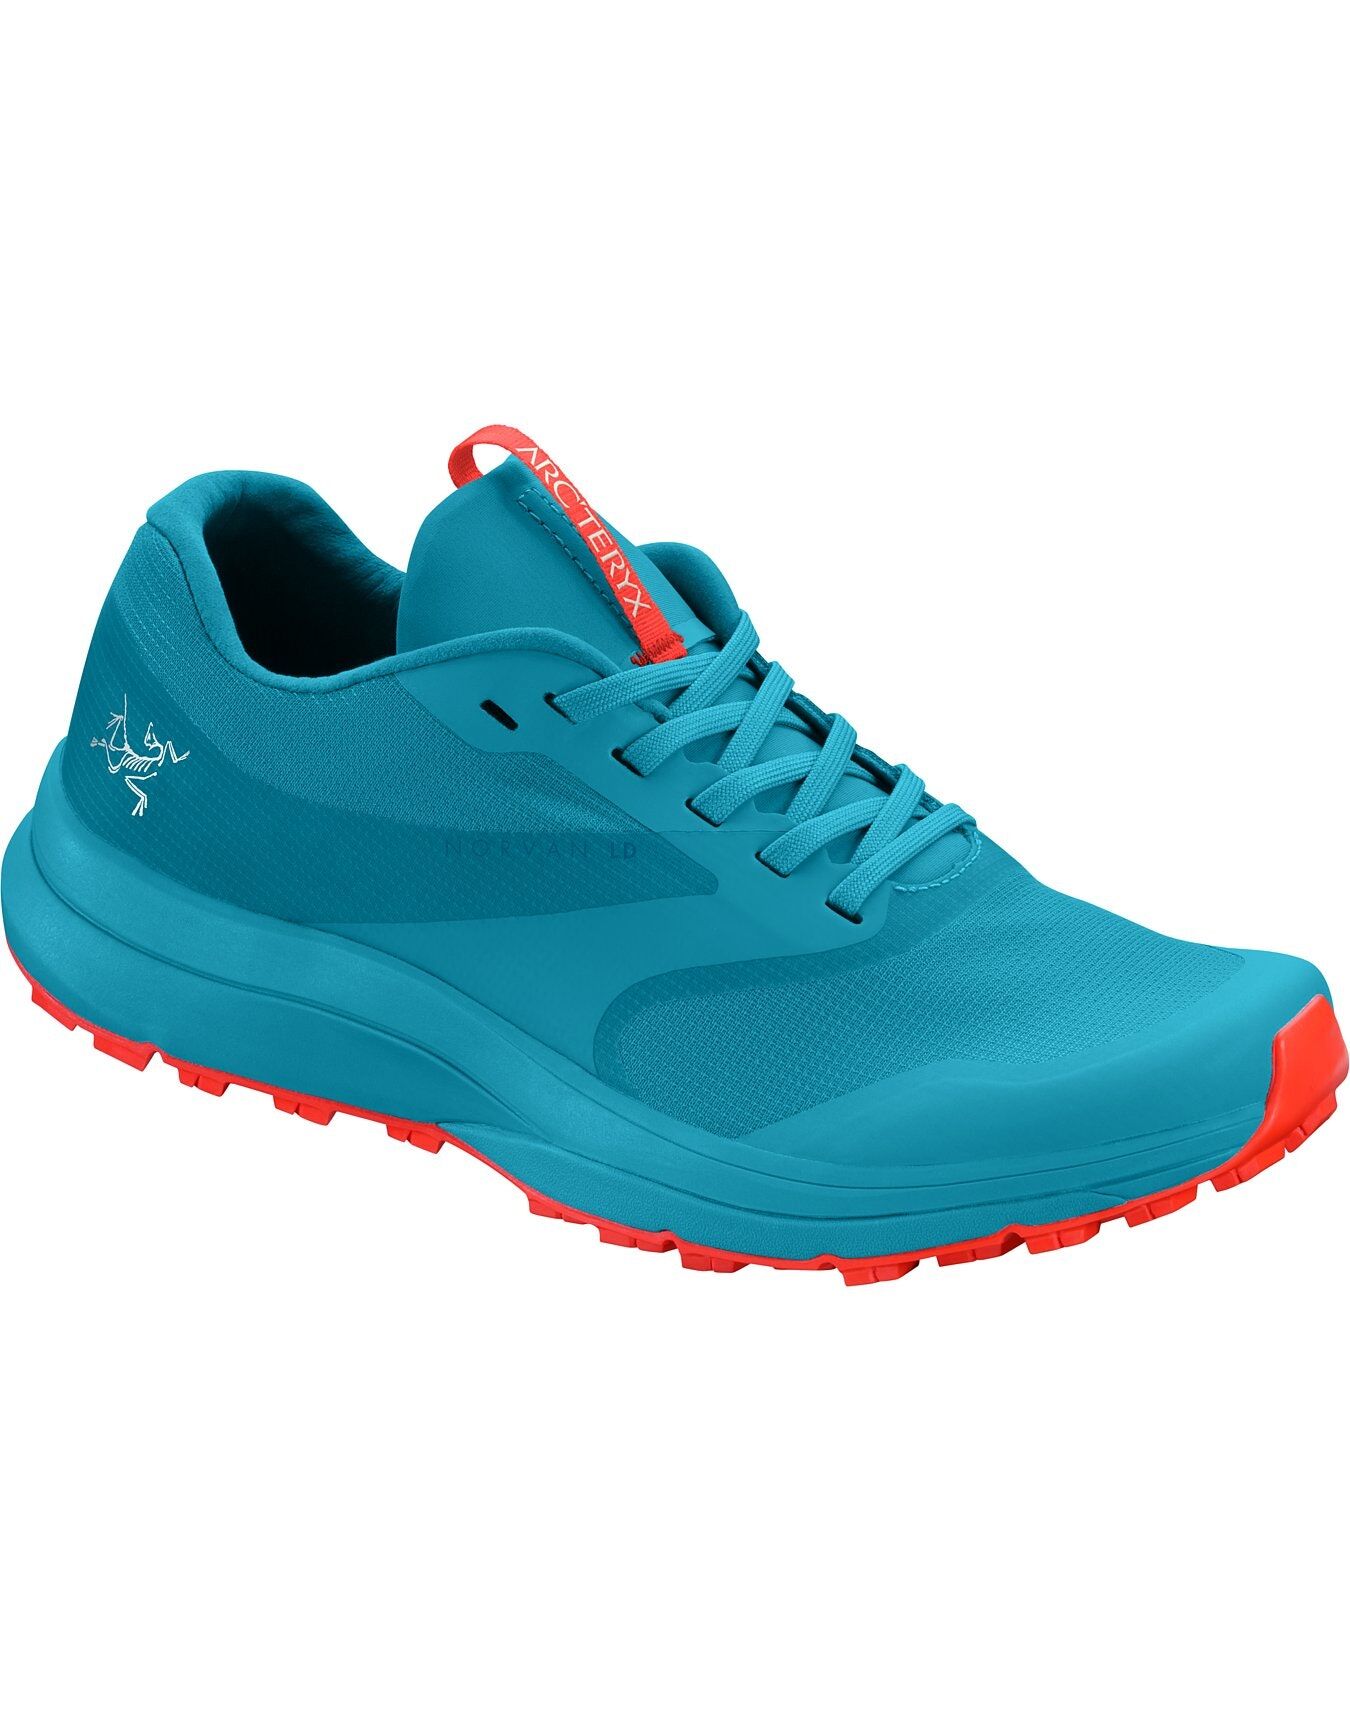 Arc'teryx Norvan LD GTX - Trail running shoes - Women's